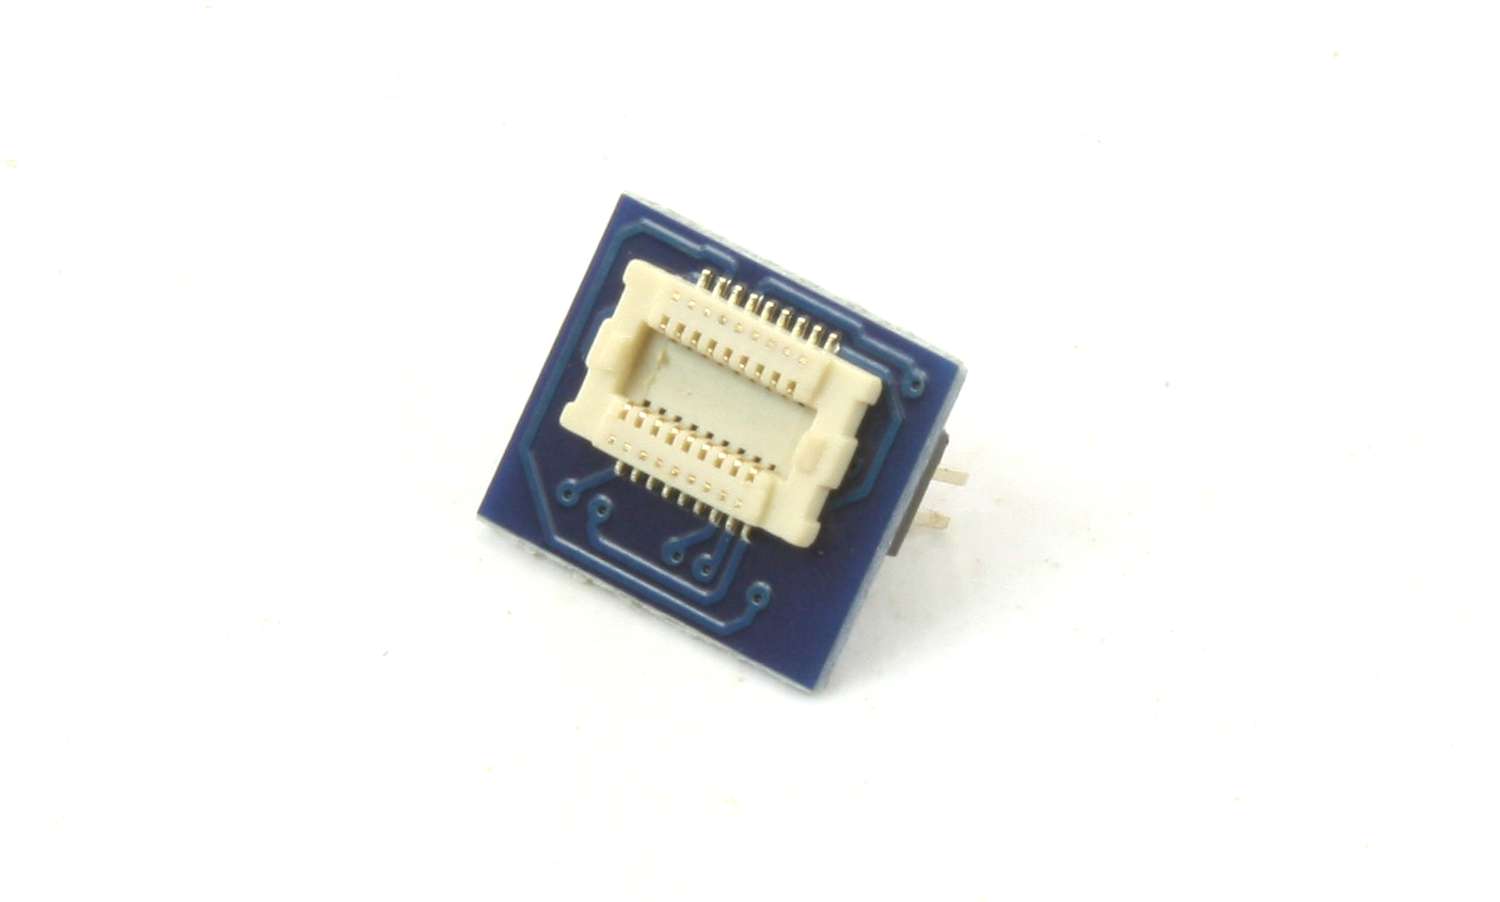 ESU 51996 - Adapterplatine, 18-pol. Next18 Buchse auf PluX16